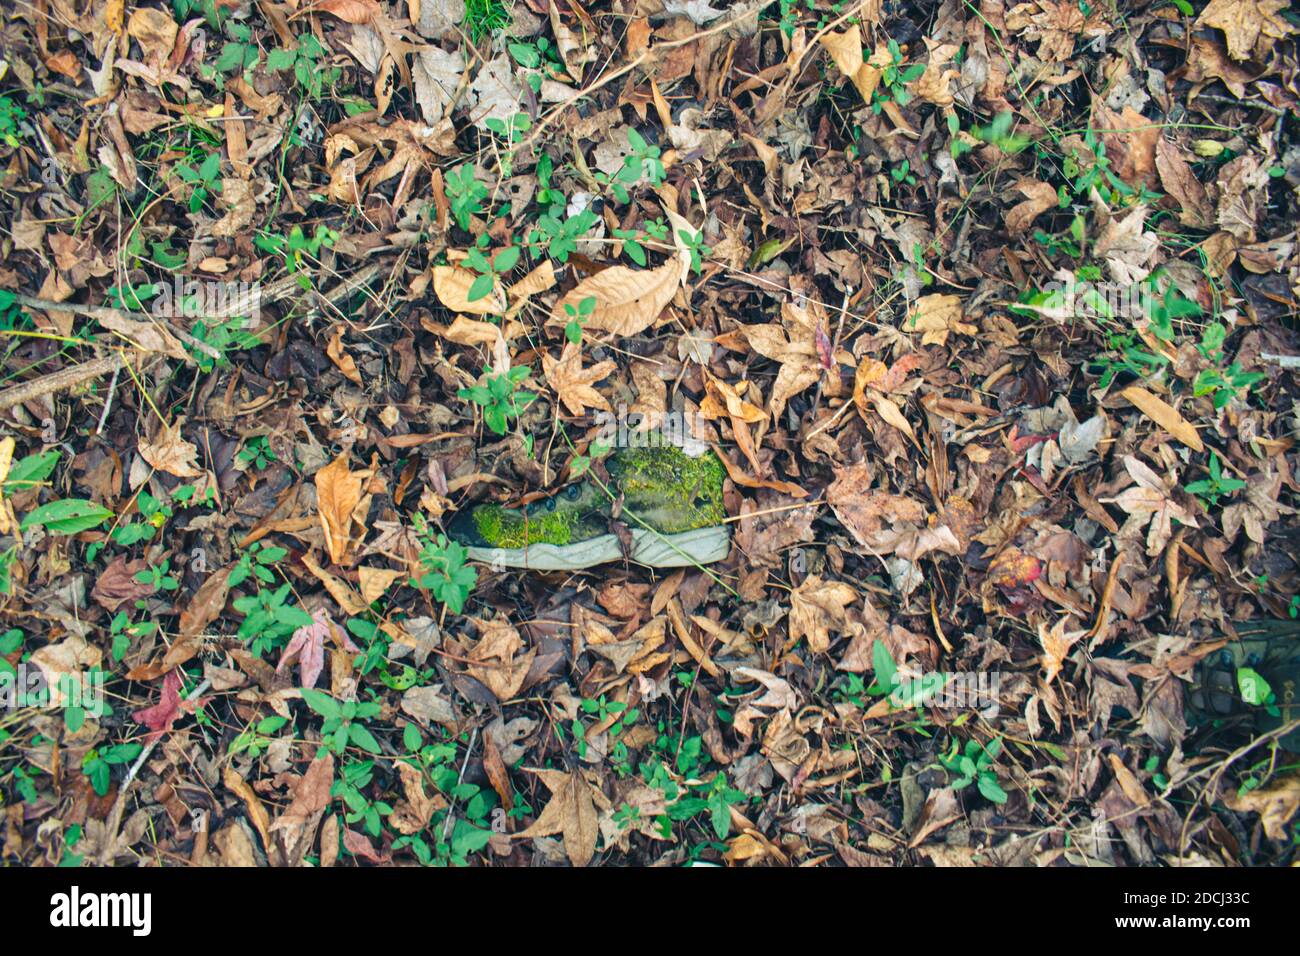 Ein eineinbunter Tennisschuh, der auf dem Waldboden liegt, mit Moos, das über dem Schuh wächst. Stockfoto